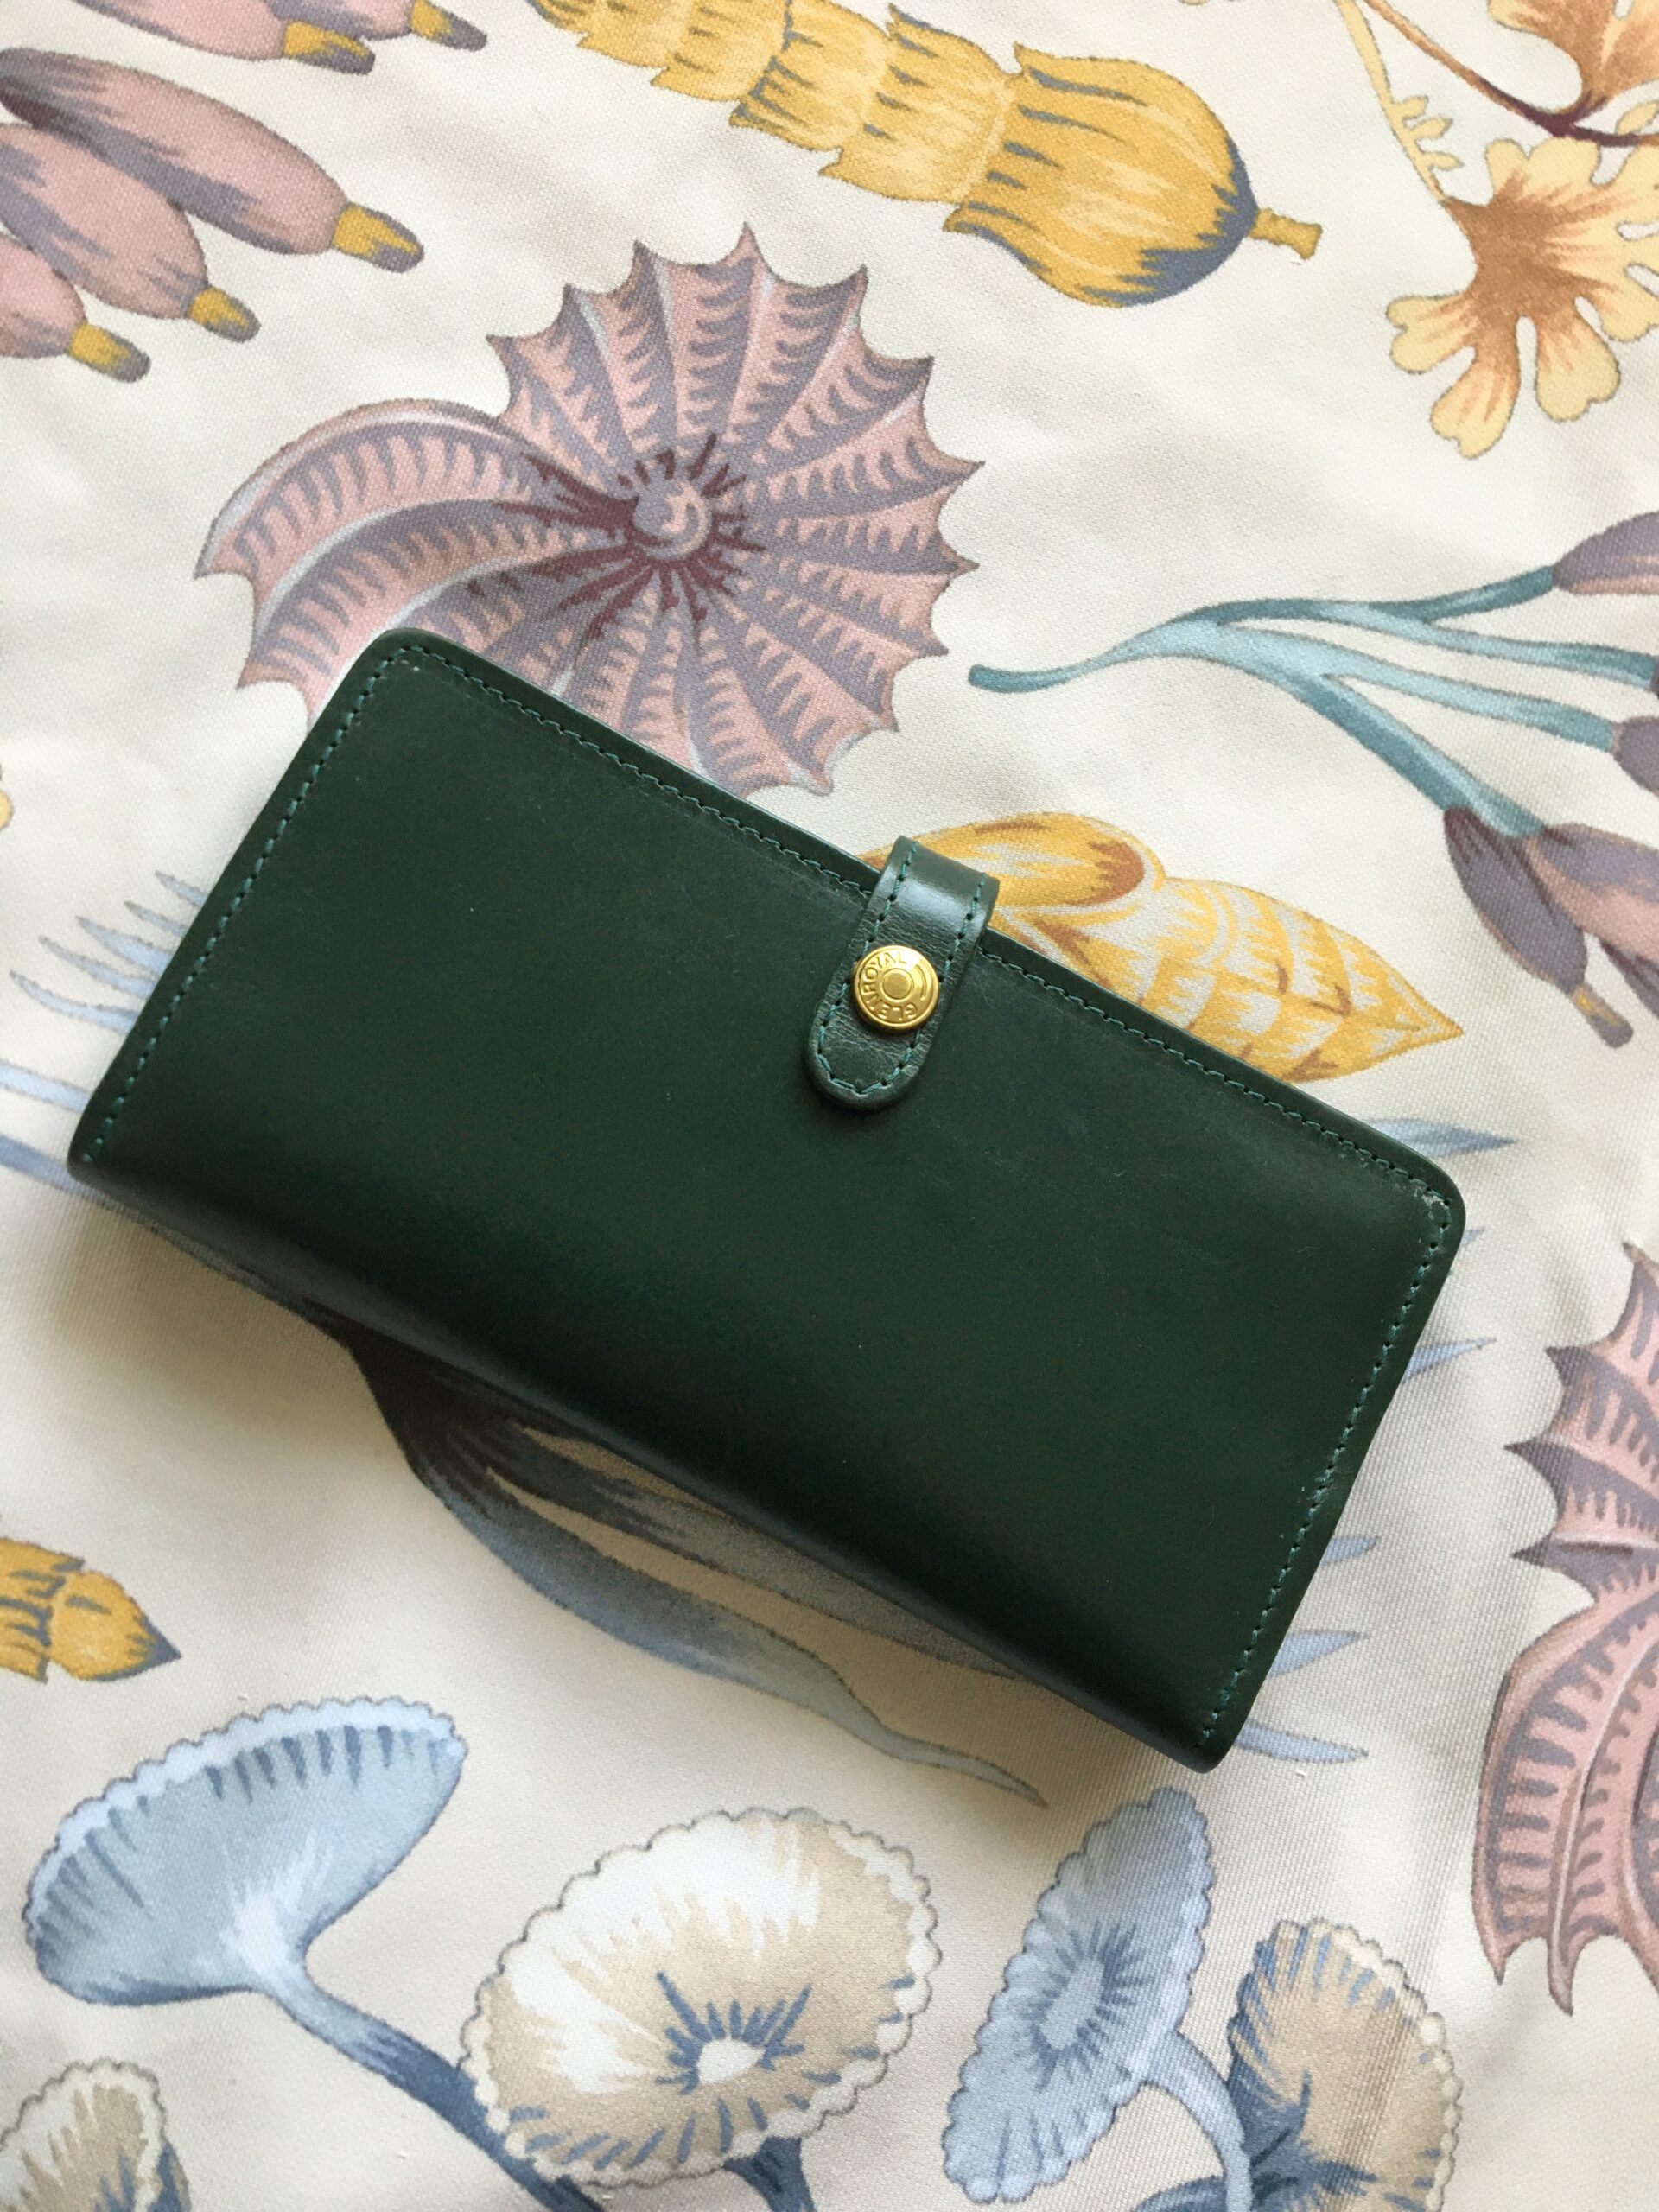 緑の長財布